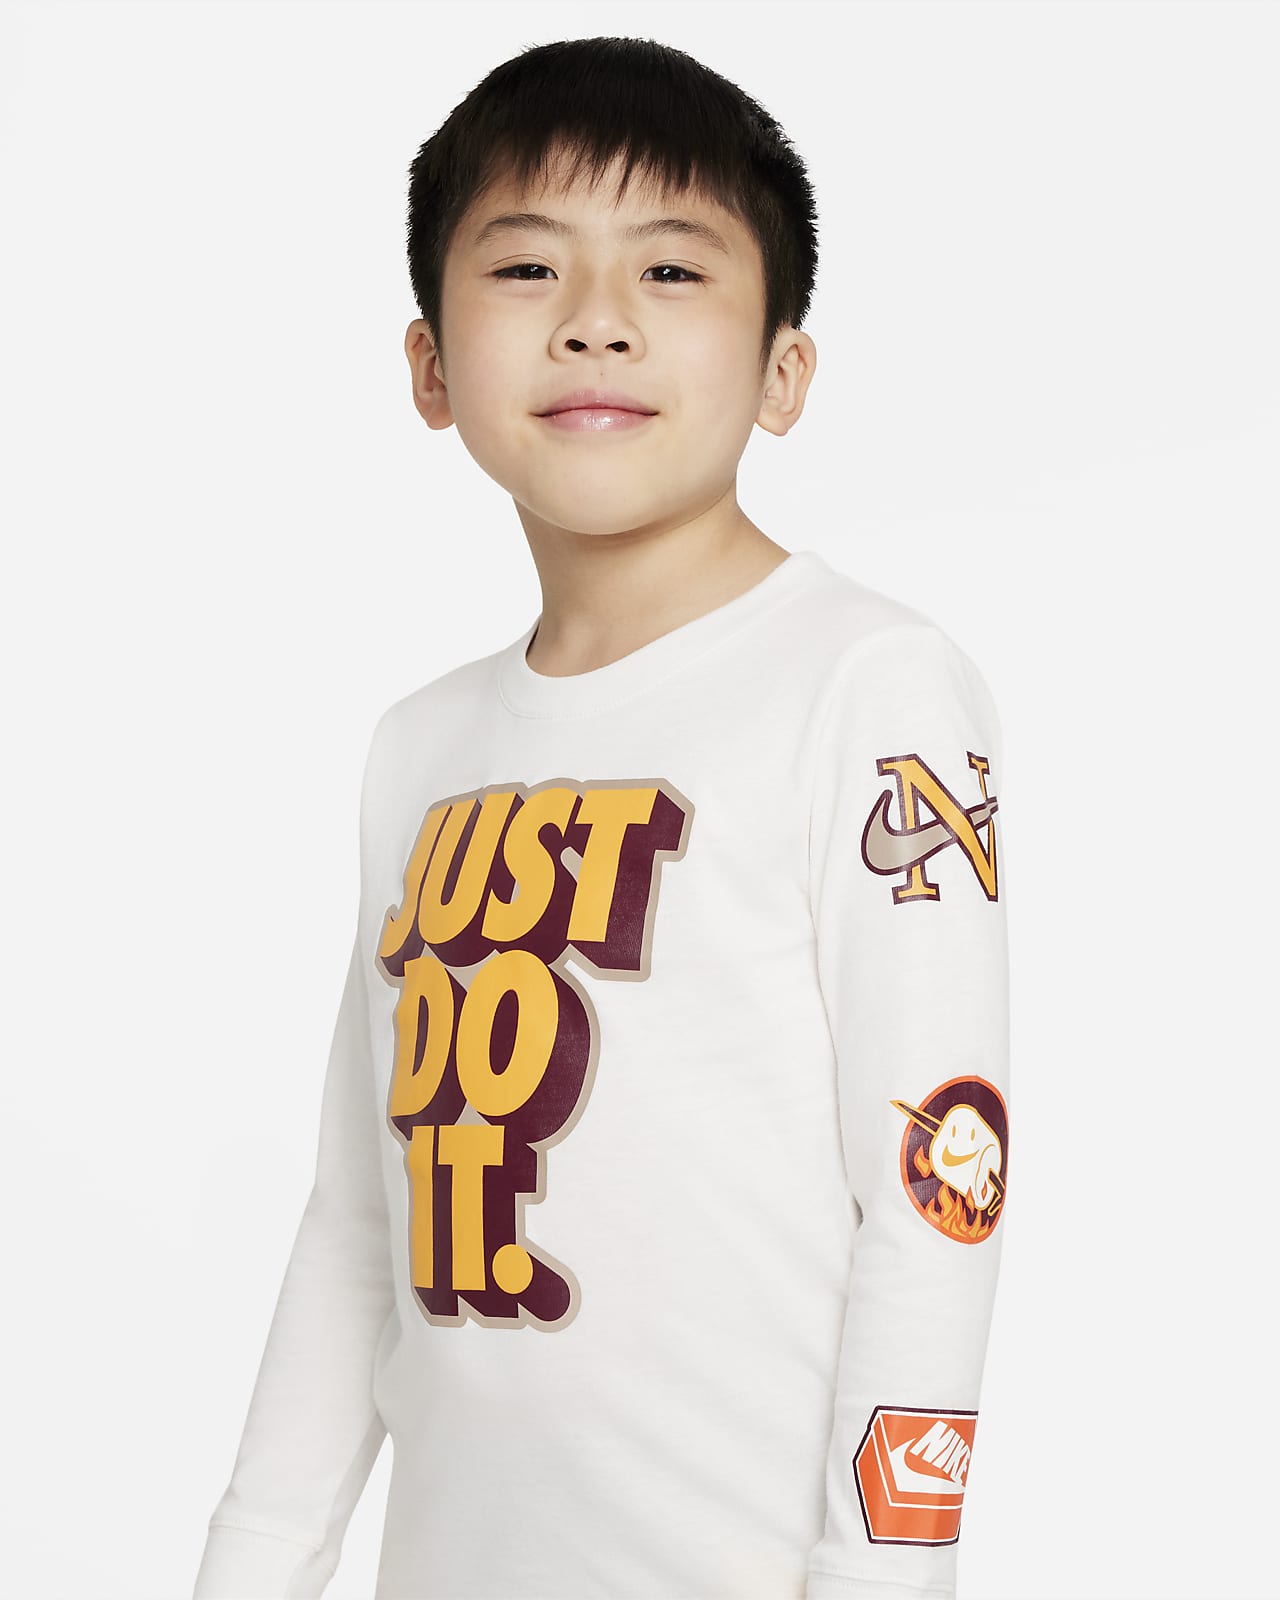 schoorsteen residu van mening zijn Nike Little Kids' Just Do It Patch Long Sleeve T-Shirt. Nike.com